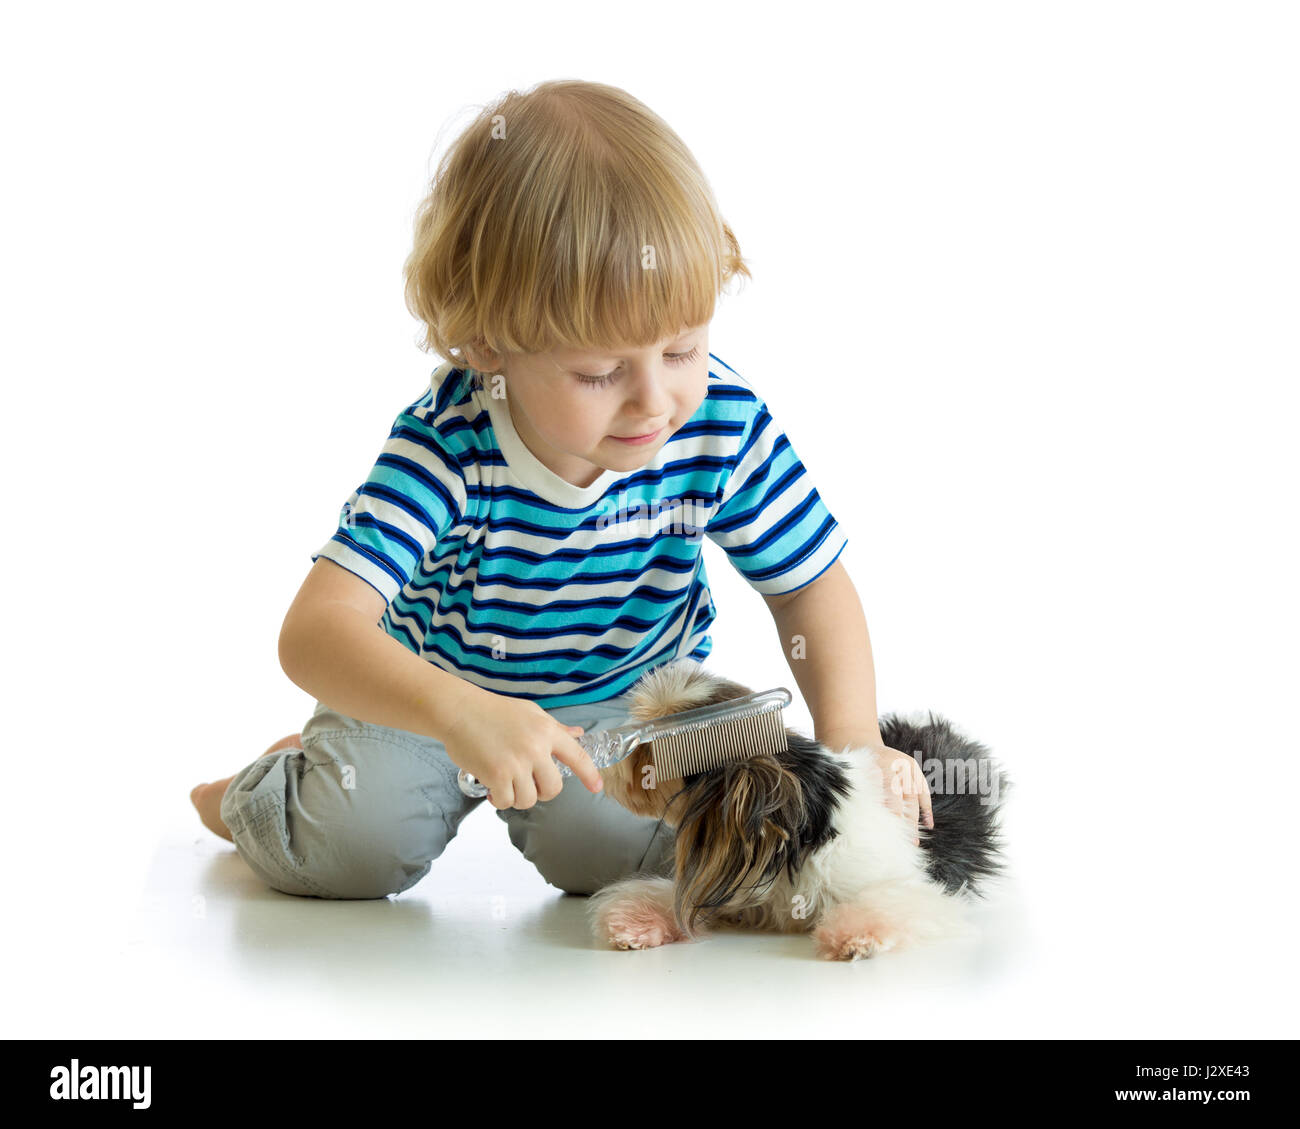 Child comb brushing dog Stock Photo